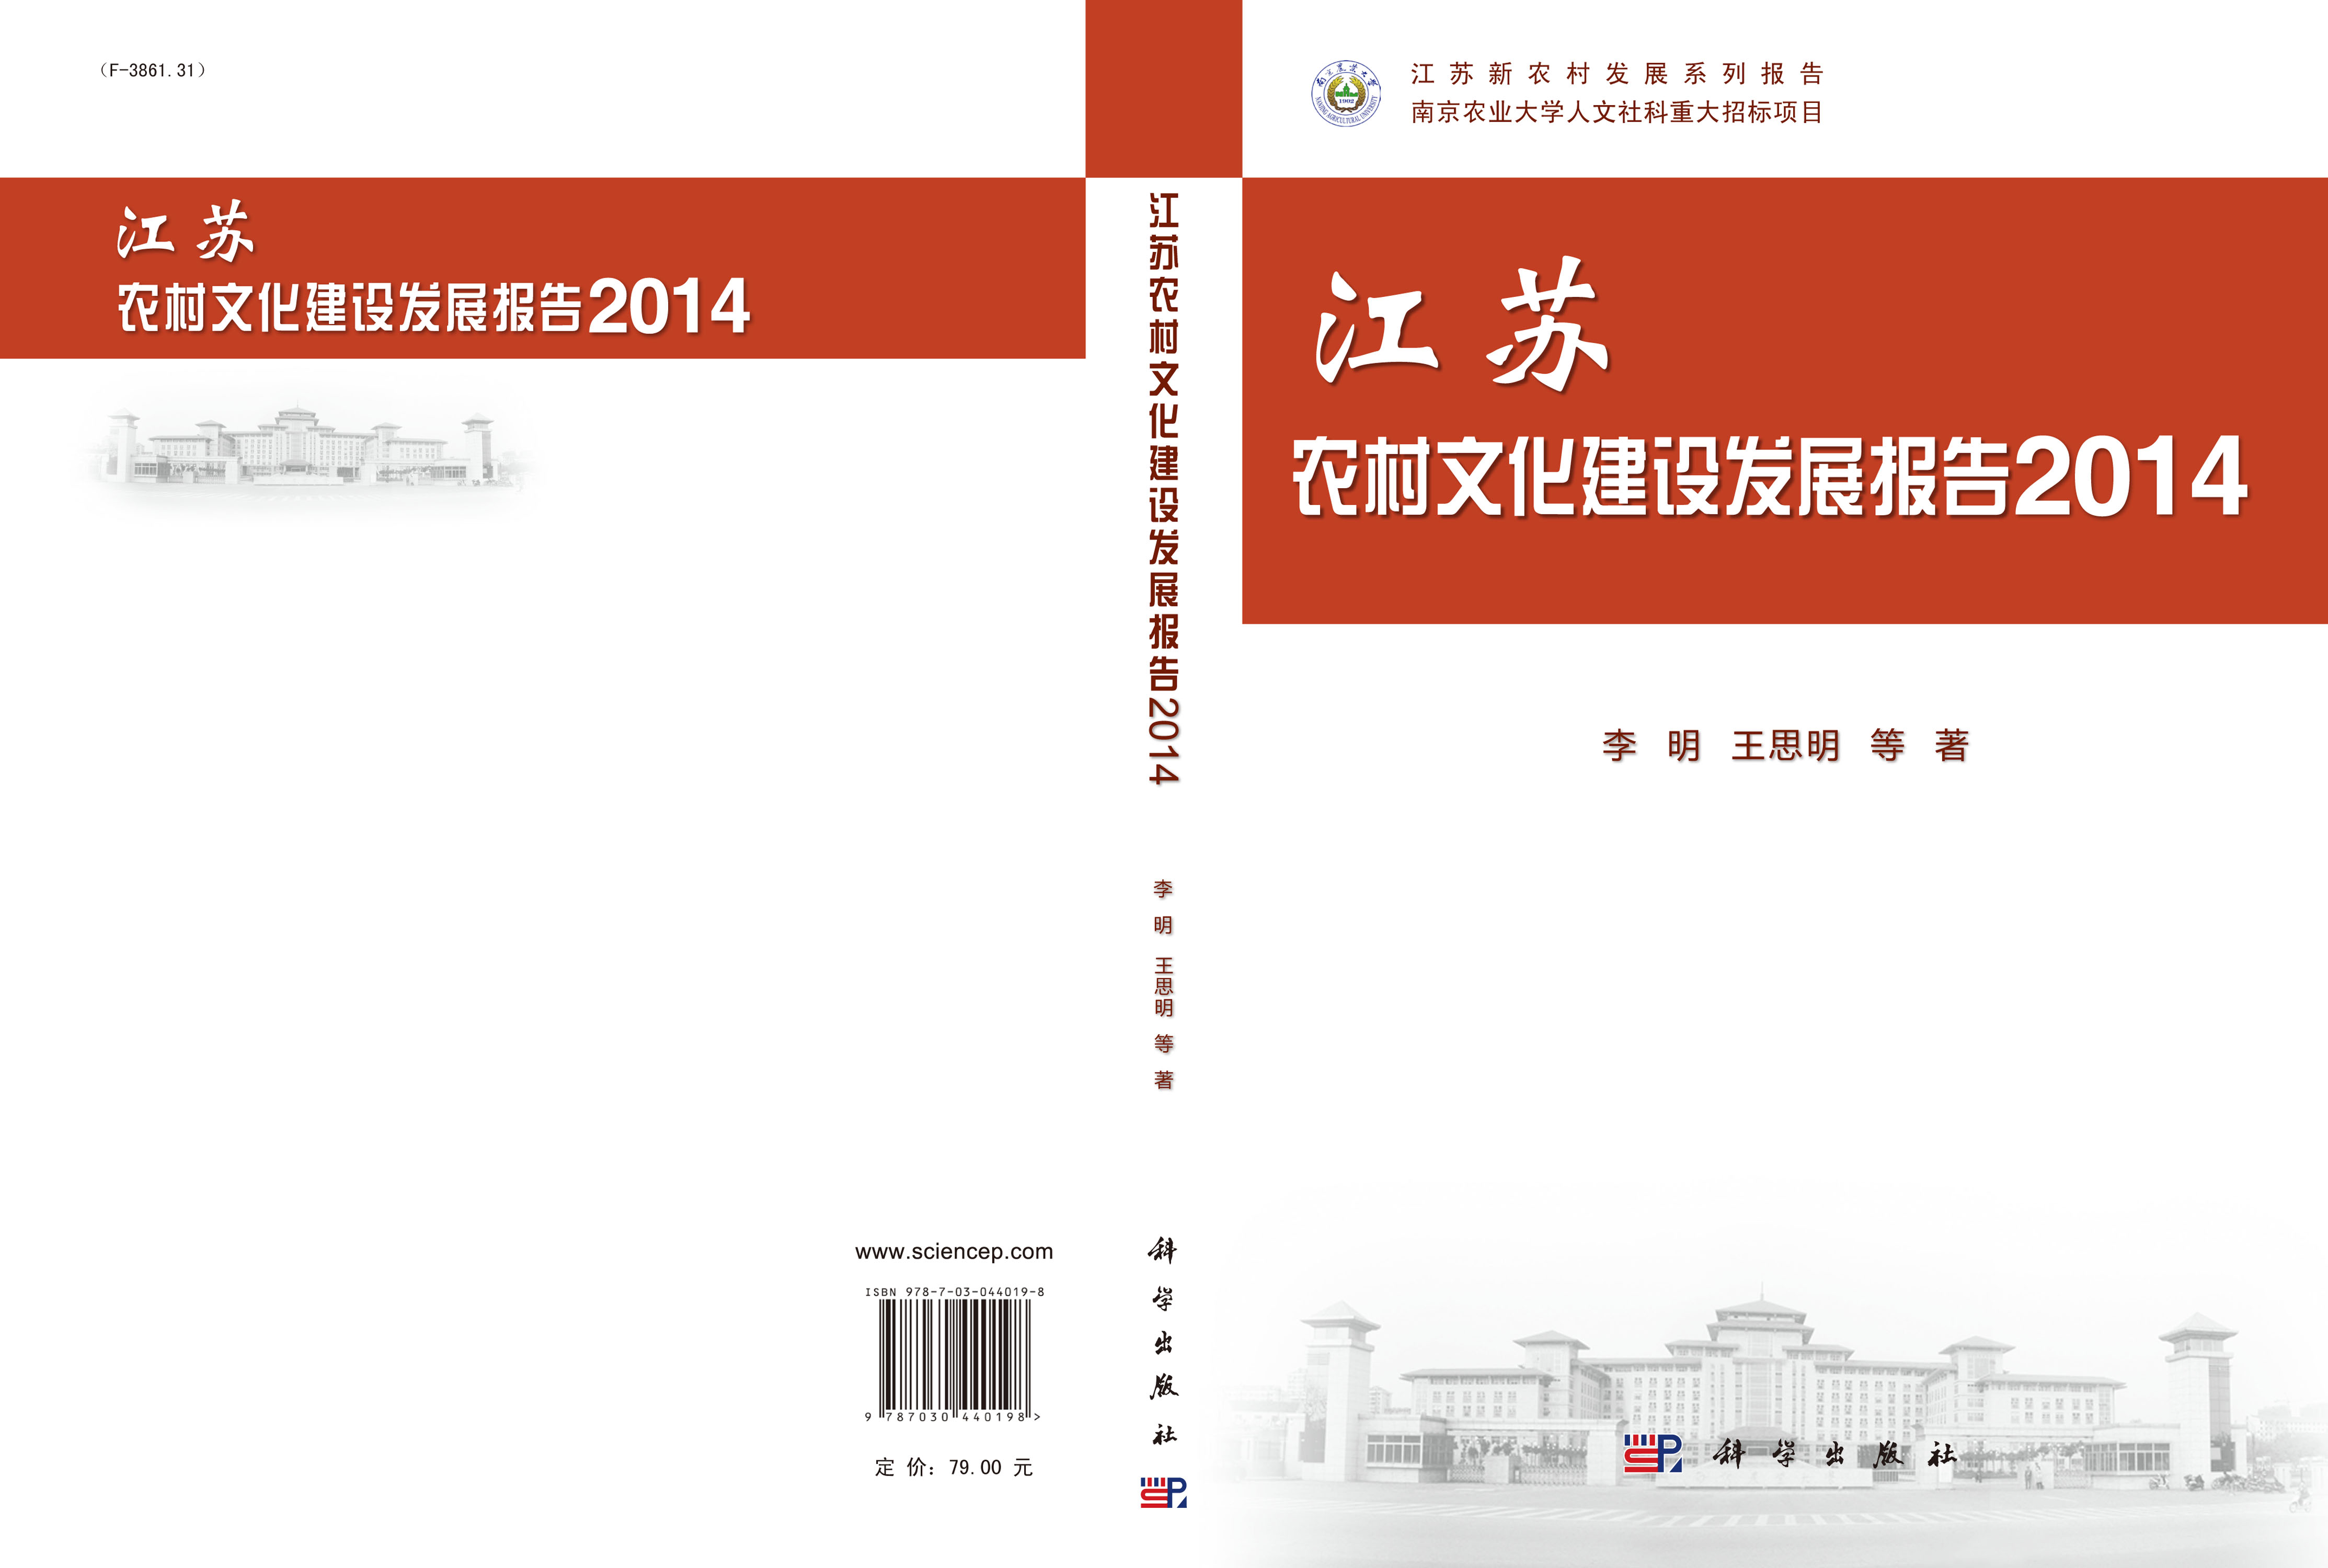 江苏农村文化建设发展报告. 2014